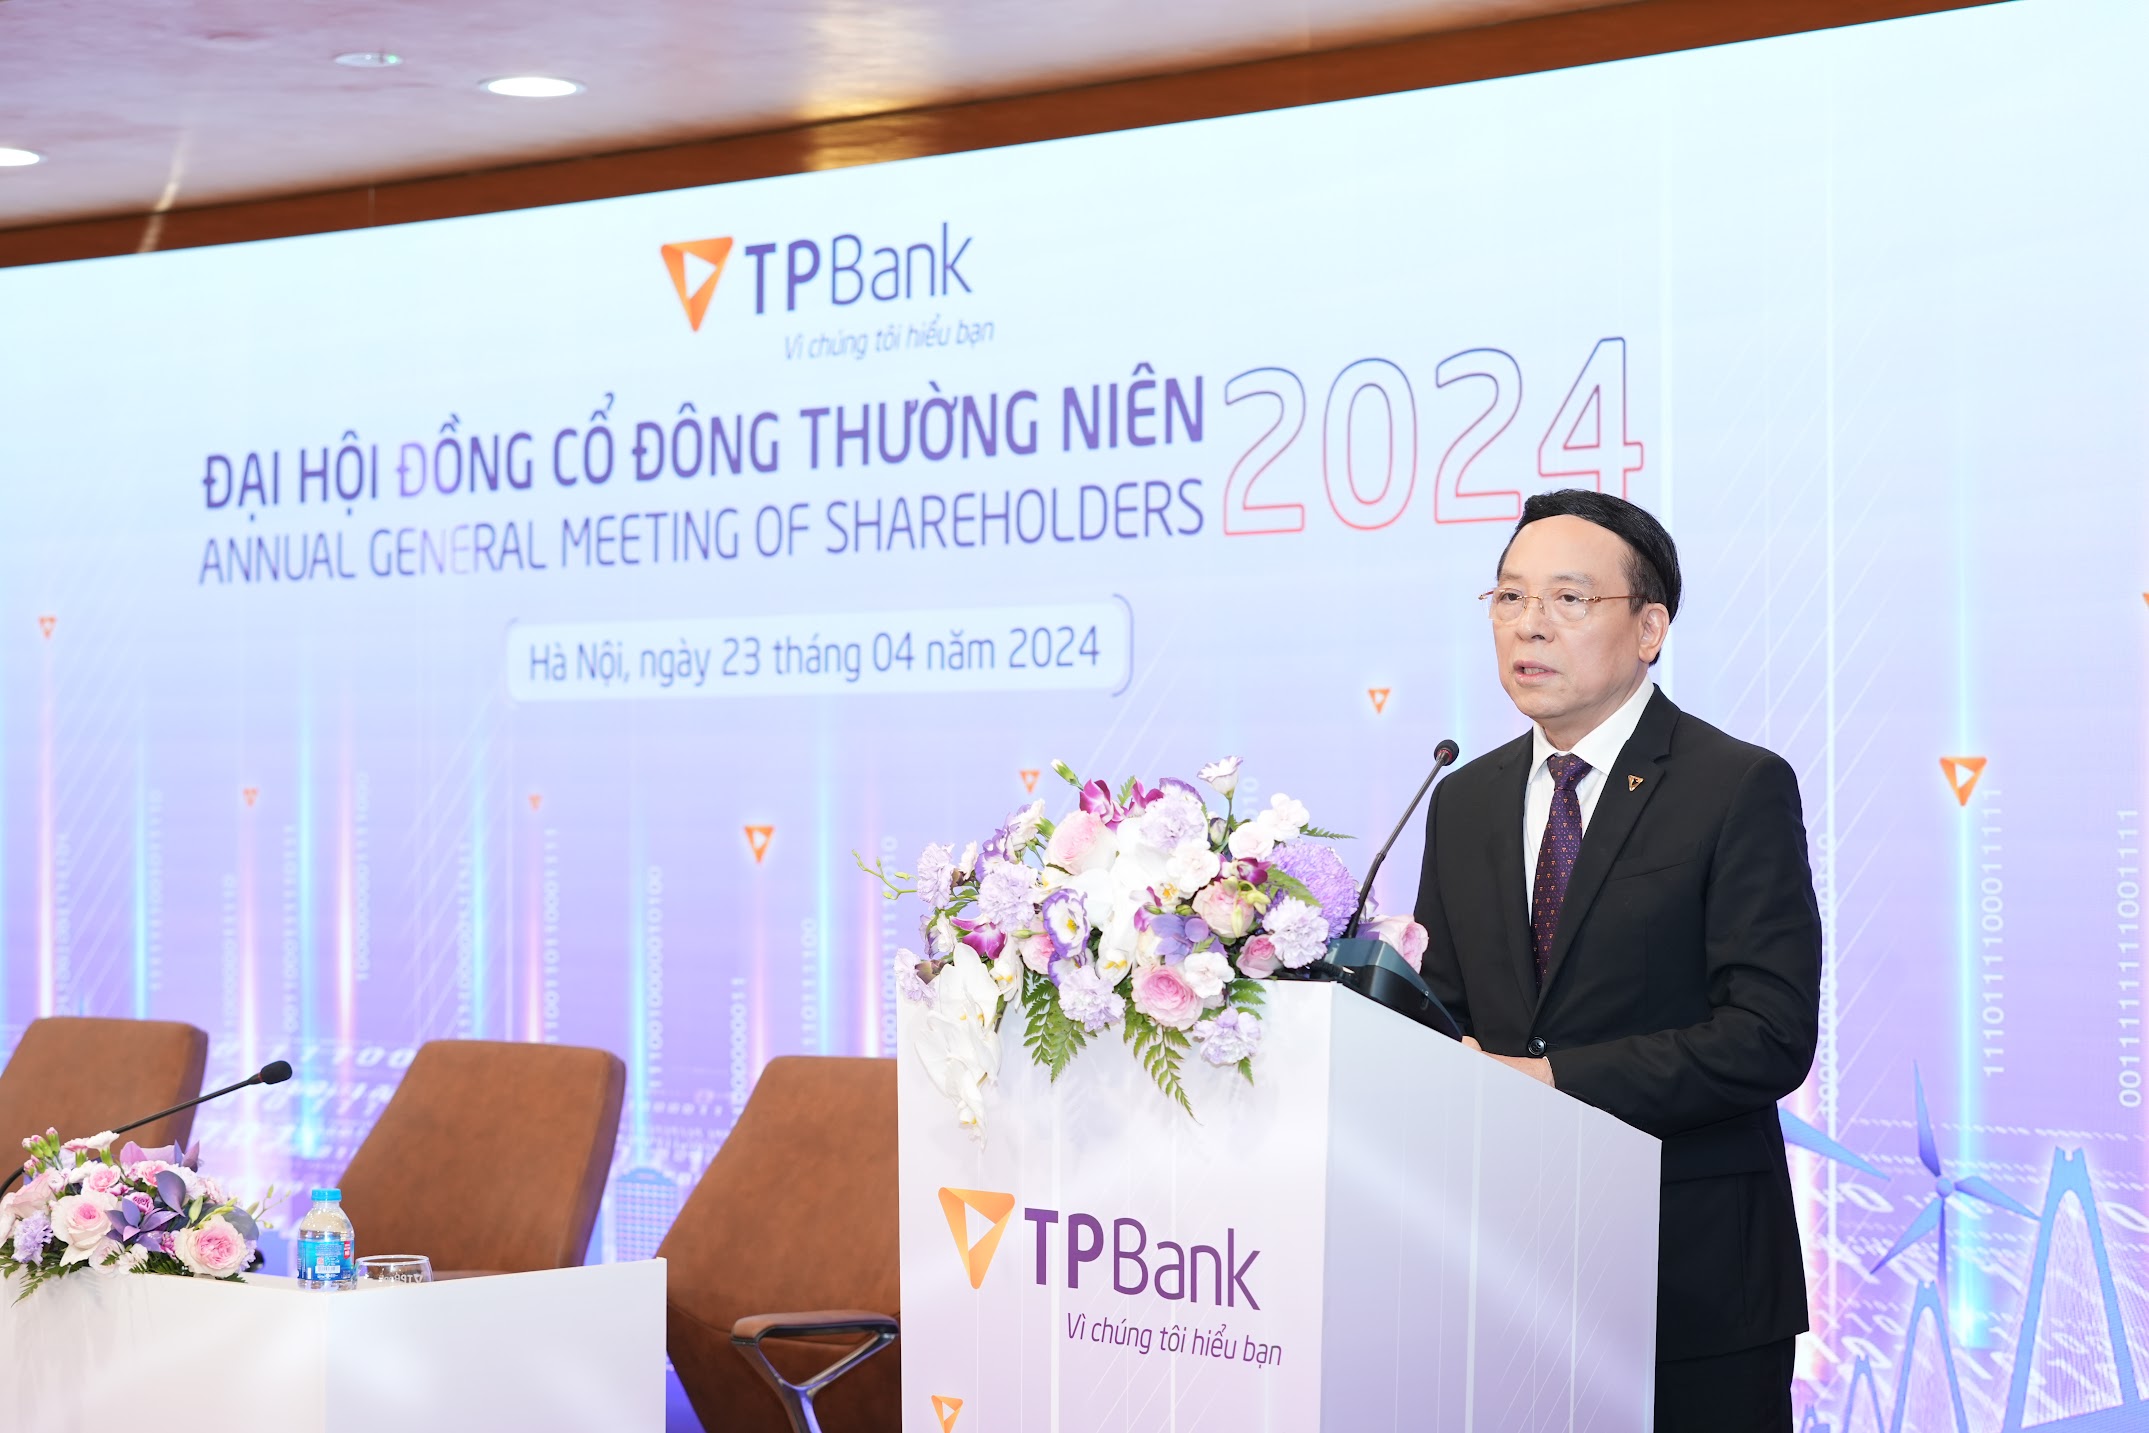 ĐHĐCĐ TPBank: Chủ tịch Đỗ Minh Phú nói về việc thay đổi đề xuất, quyết định trình kế hoạch chia cả cổ tức tiền mặt và cổ phiếu trong năm nay- Ảnh 1.